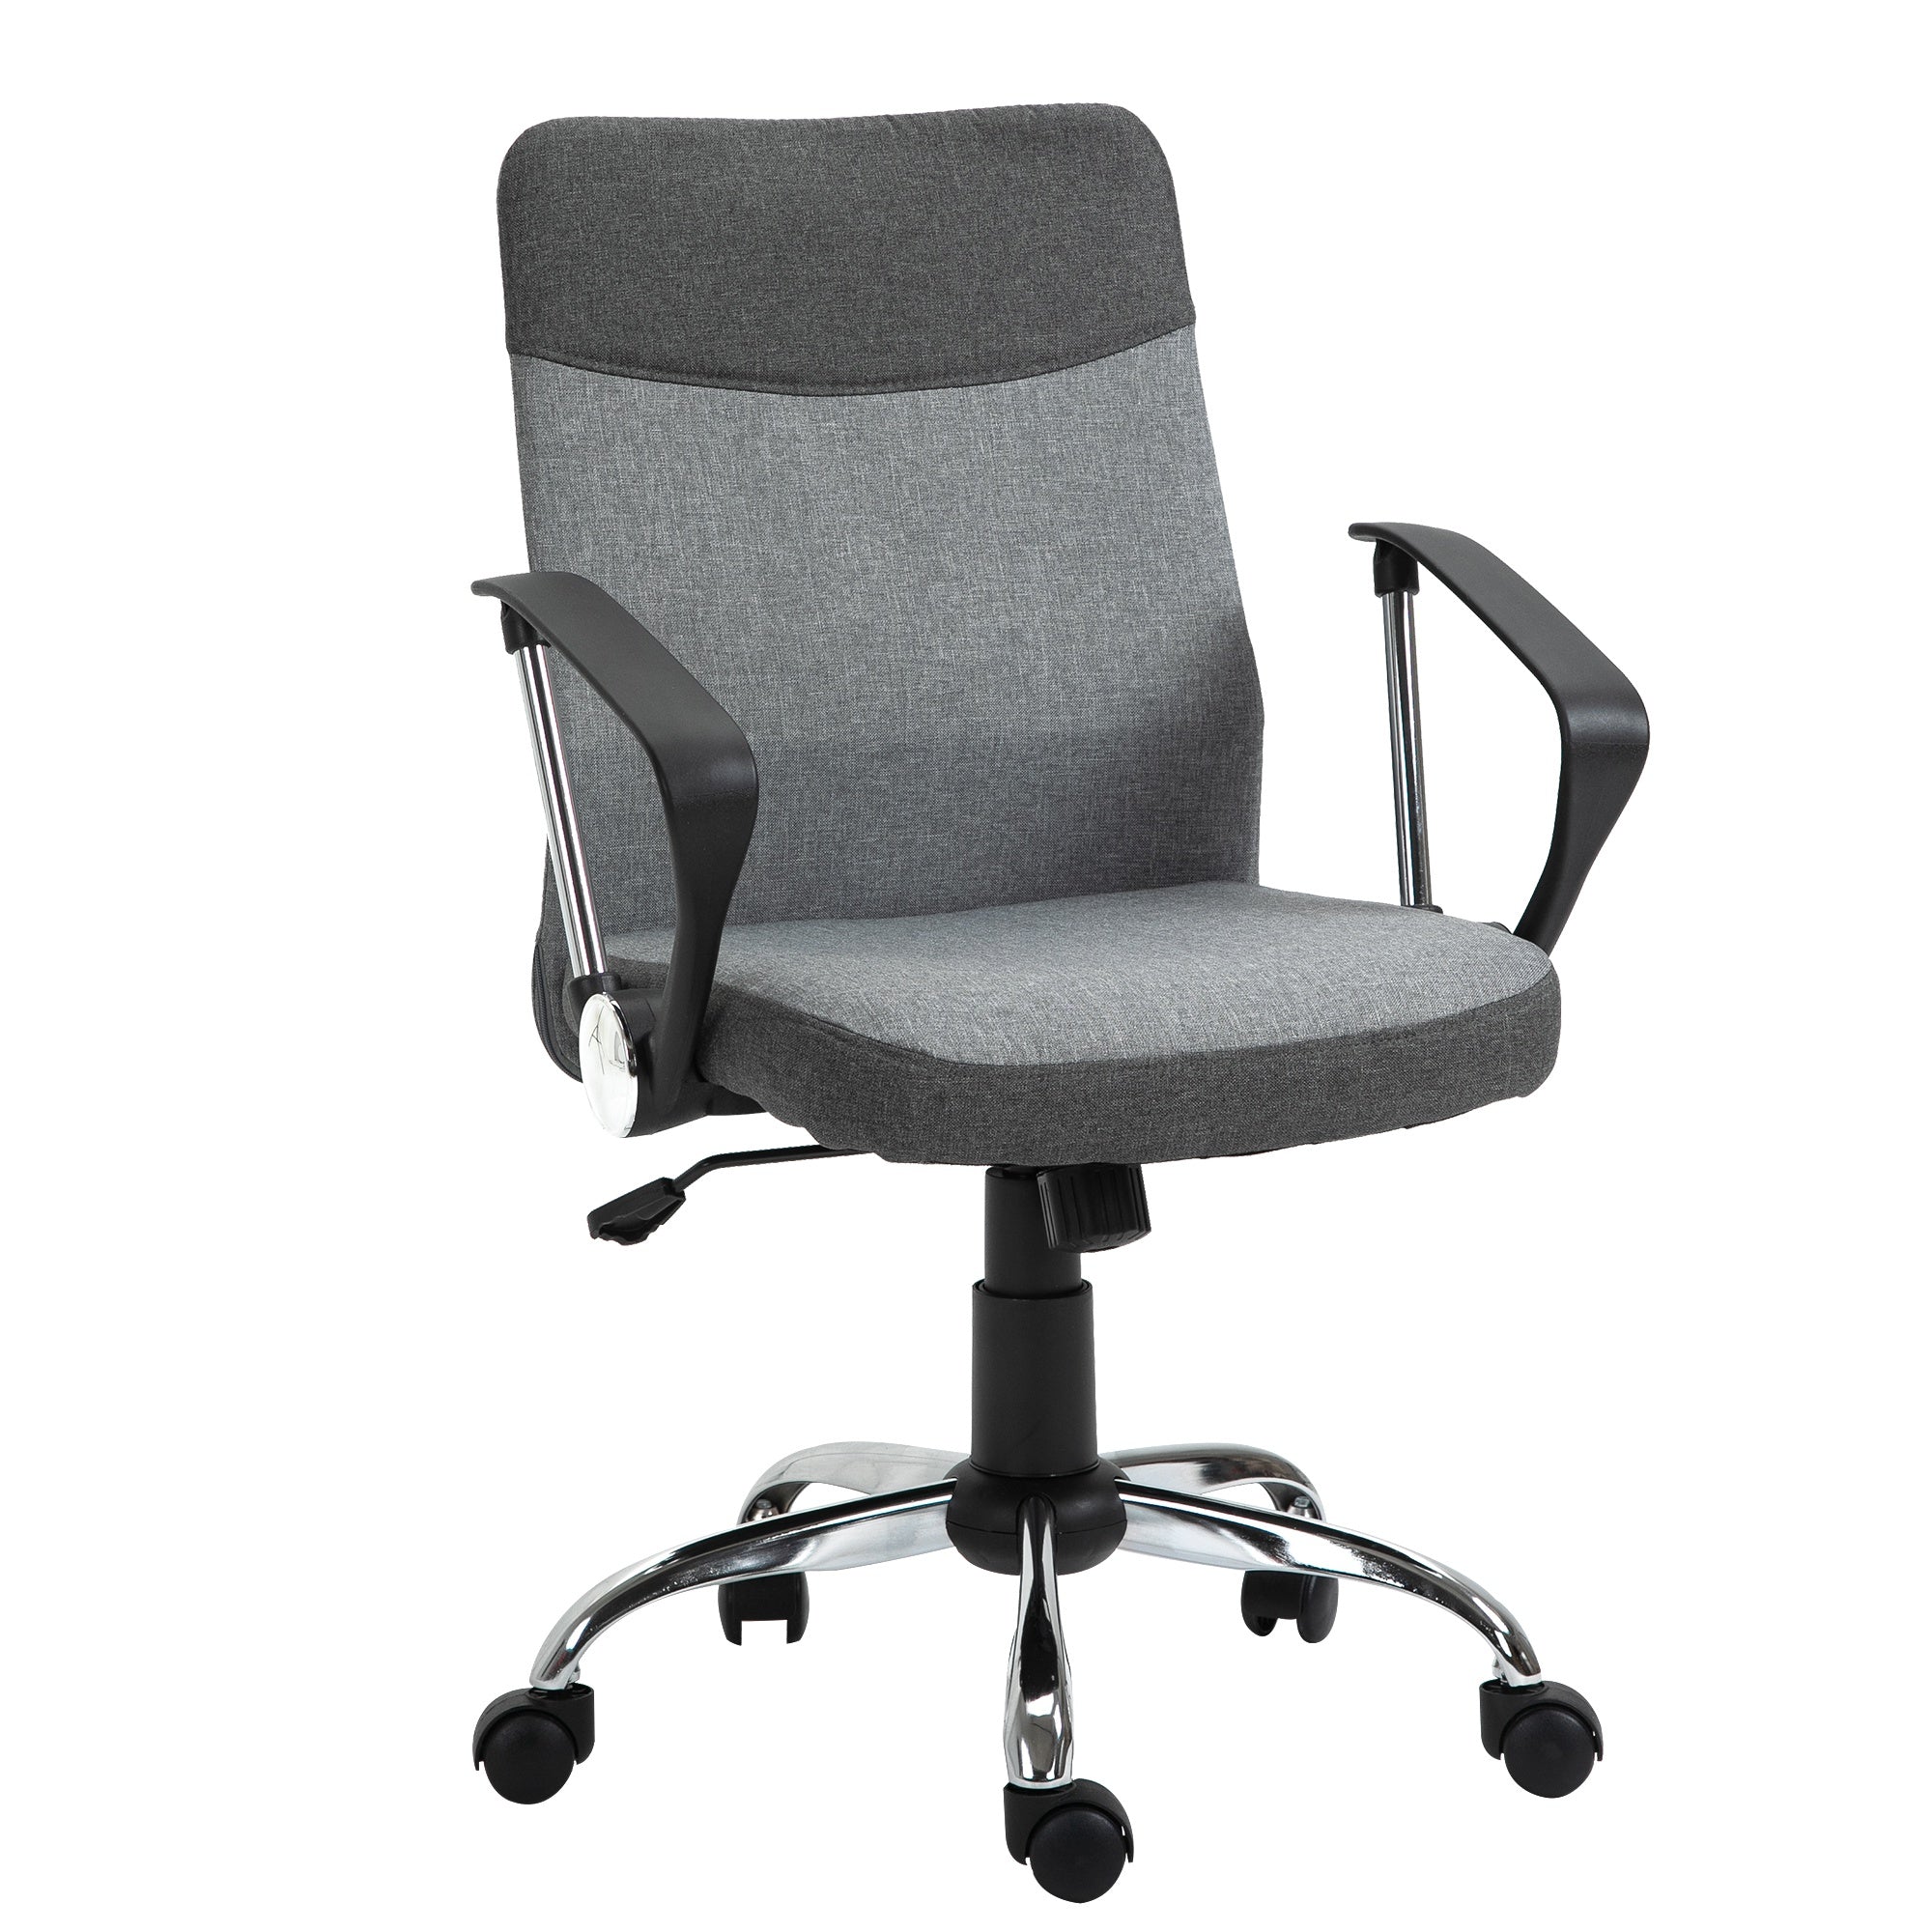 ProperAV Linen Fabric Rocker Swivel Office Chair with Wheels - Grey